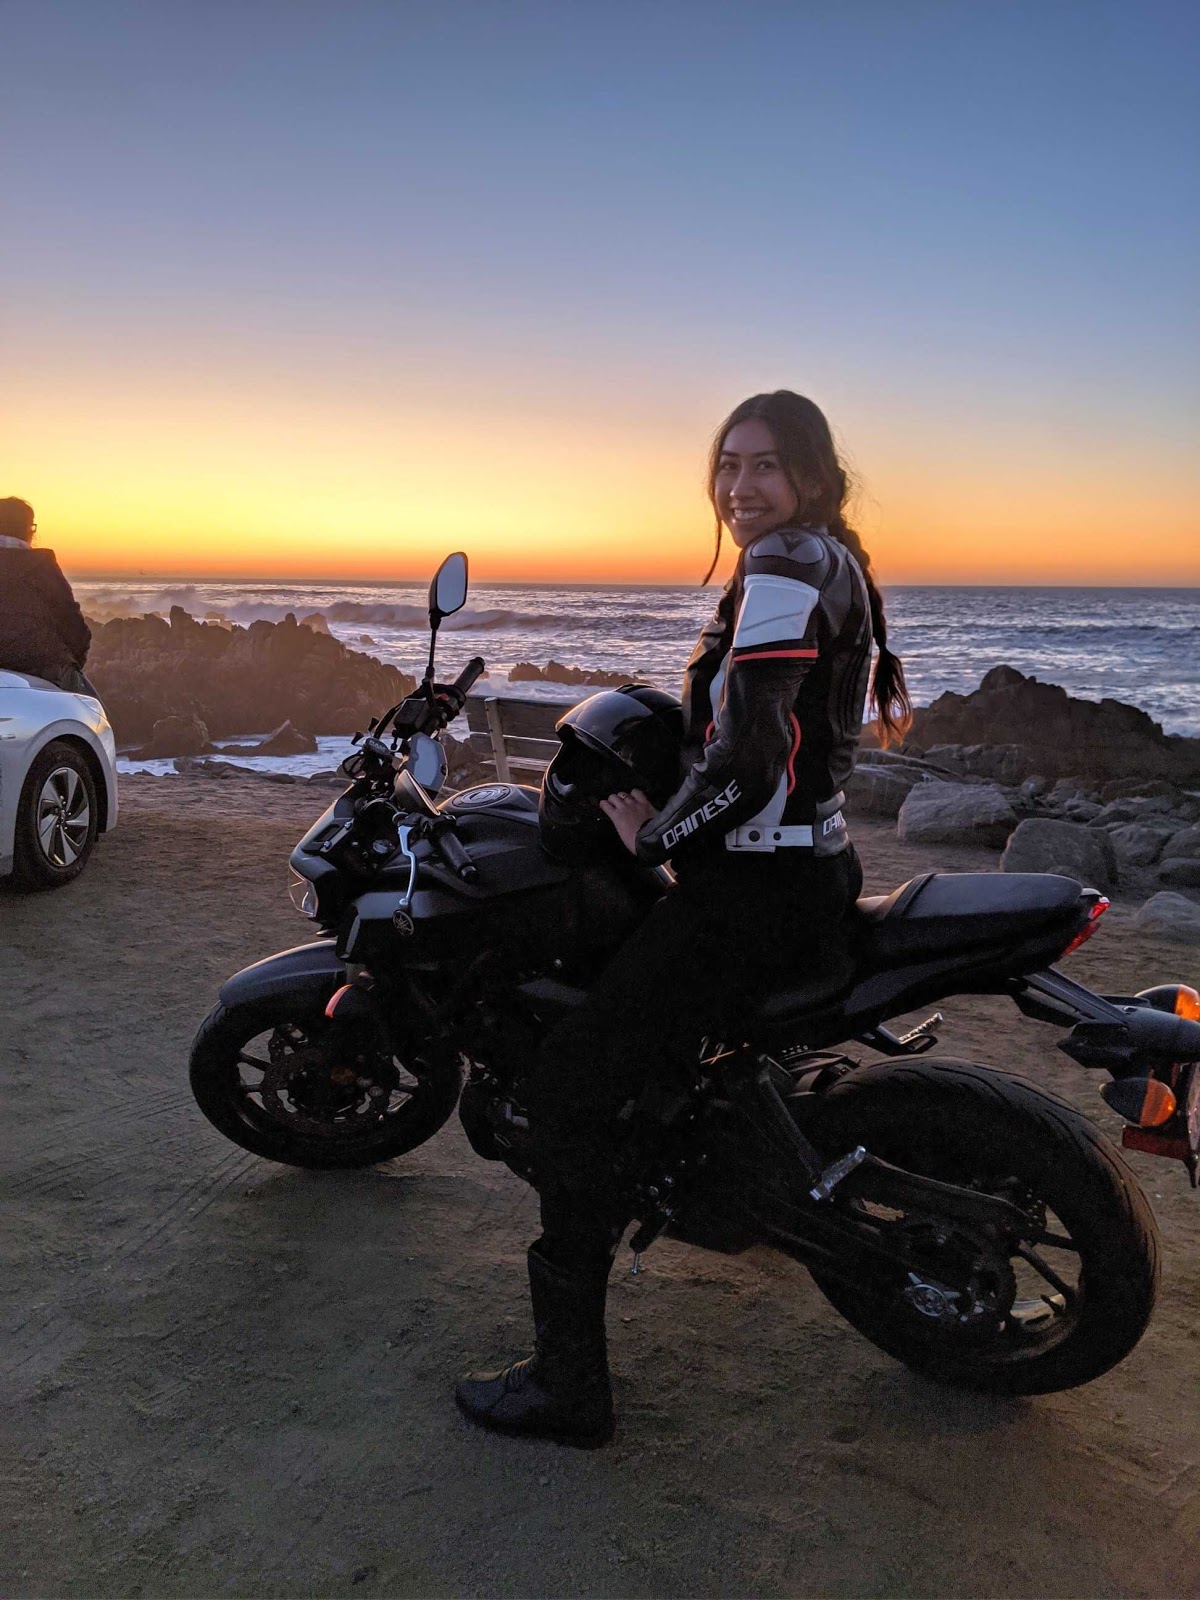 Marissa on a motorcycle